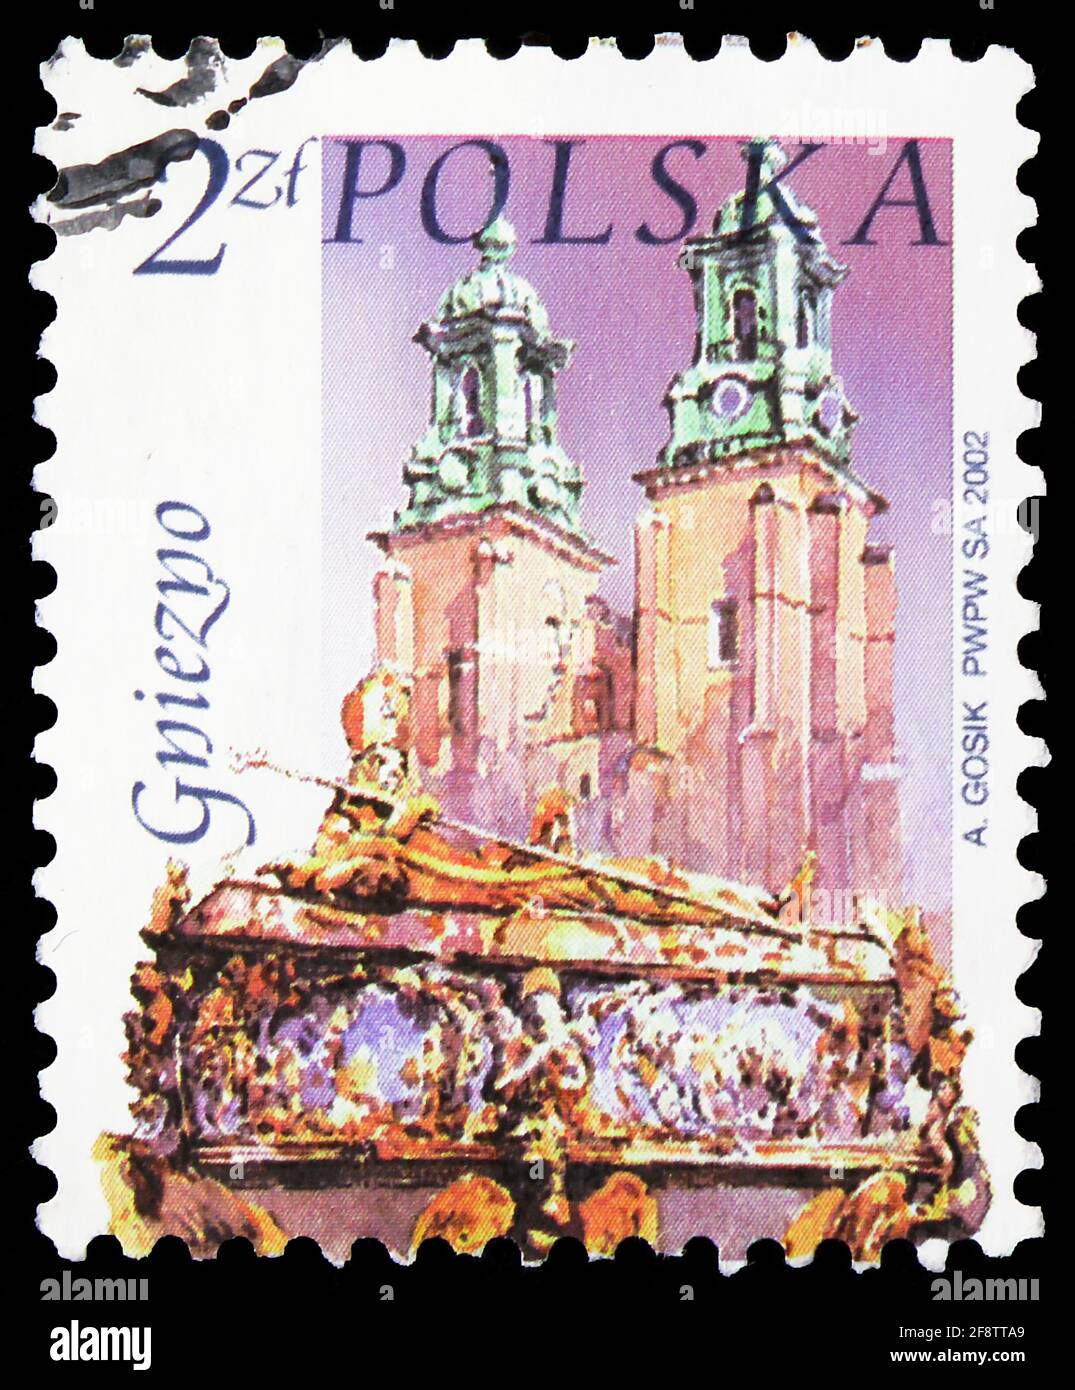 Vintage Polish Postage Stamps Sheet Of Vintage Stamps